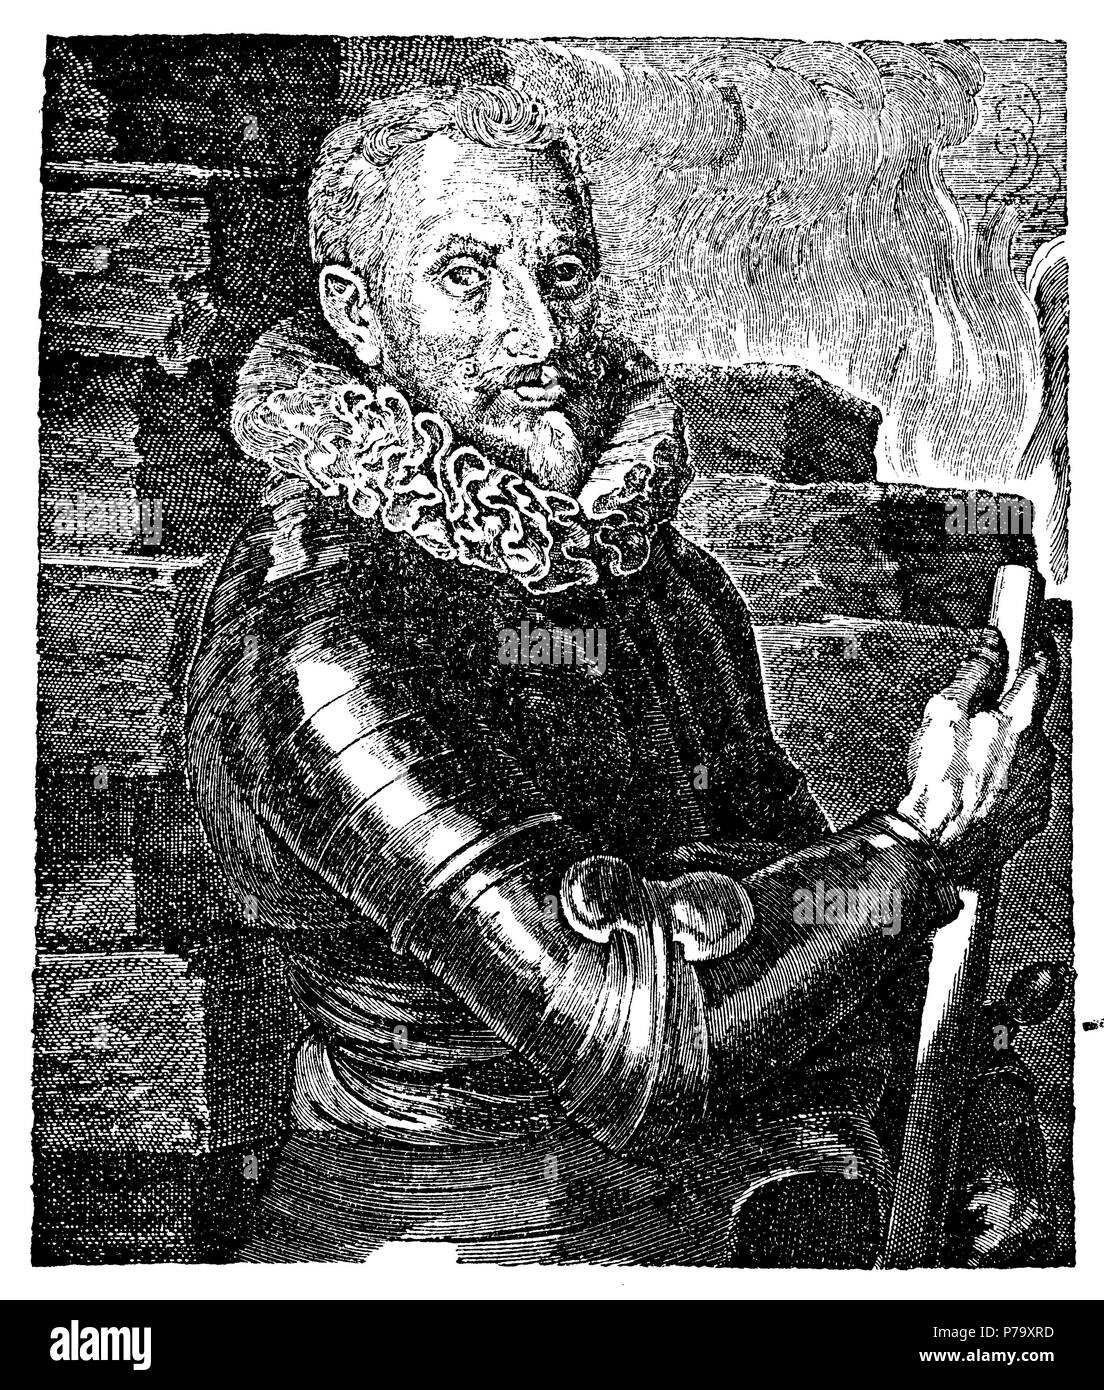 Johann T'Serclaes von Tilly, Graf Tilly (1559-1632), einer der obersten Befehlshaber des Dreißigjährigen Krieges, sowohl der katholischen Liga und von 1630 die kaiserliche Armee. Nach einem Gemälde von van Dyck, van Dyck 1881 Stockfoto